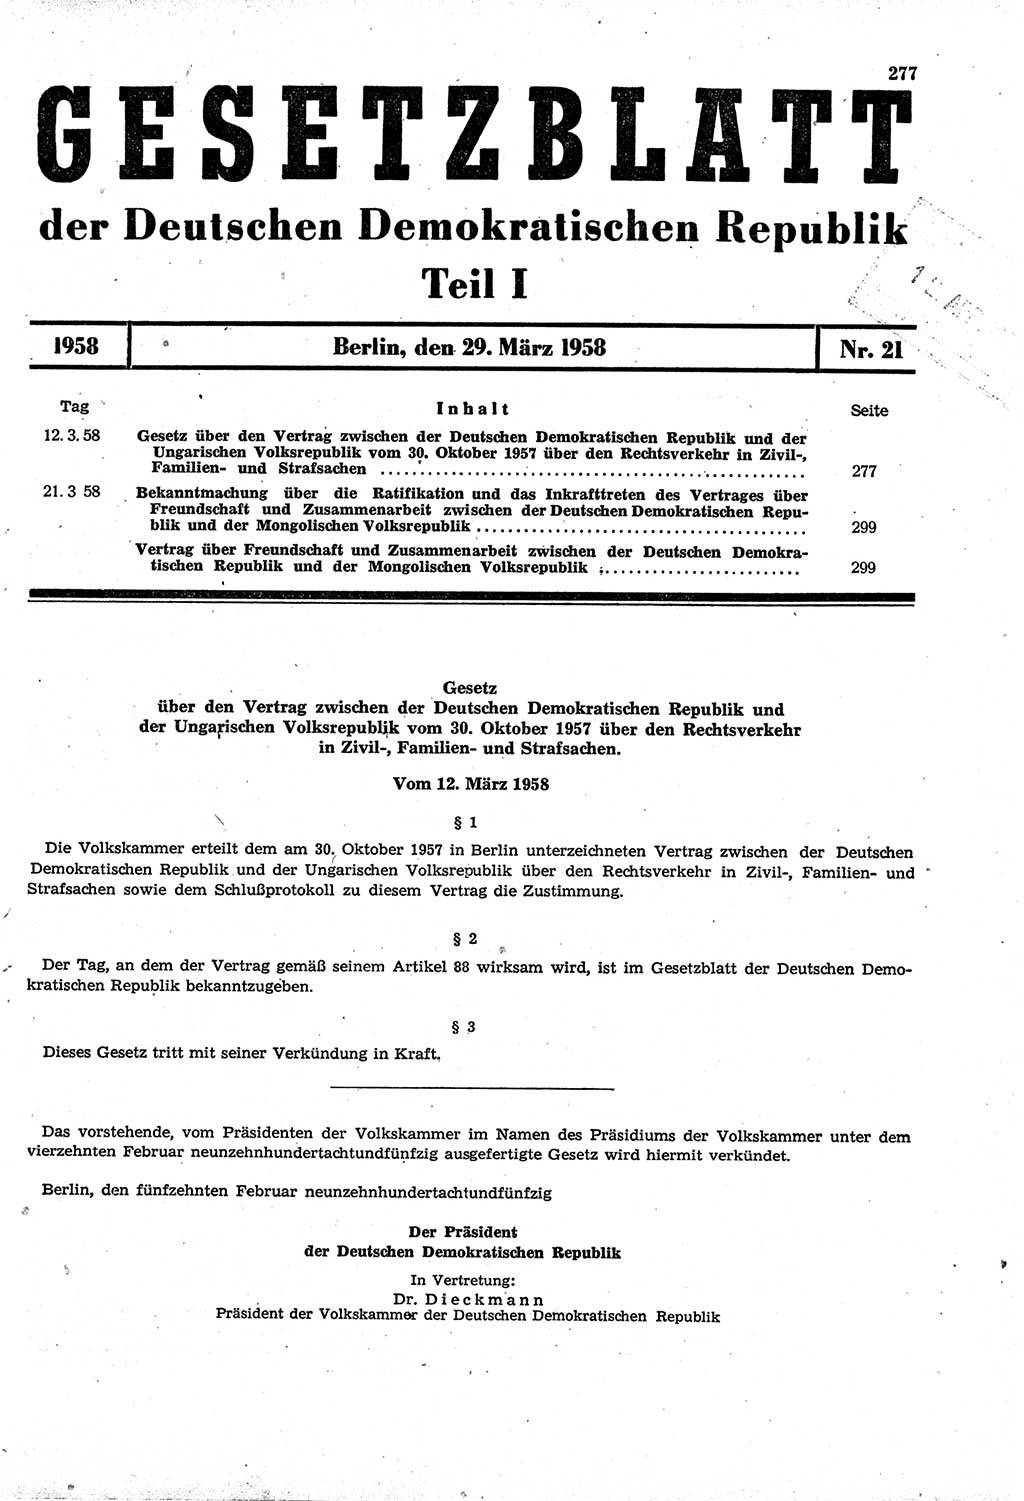 Gesetzblatt (GBl.) der Deutschen Demokratischen Republik (DDR) Teil Ⅰ 1958, Seite 277 (GBl. DDR Ⅰ 1958, S. 277)